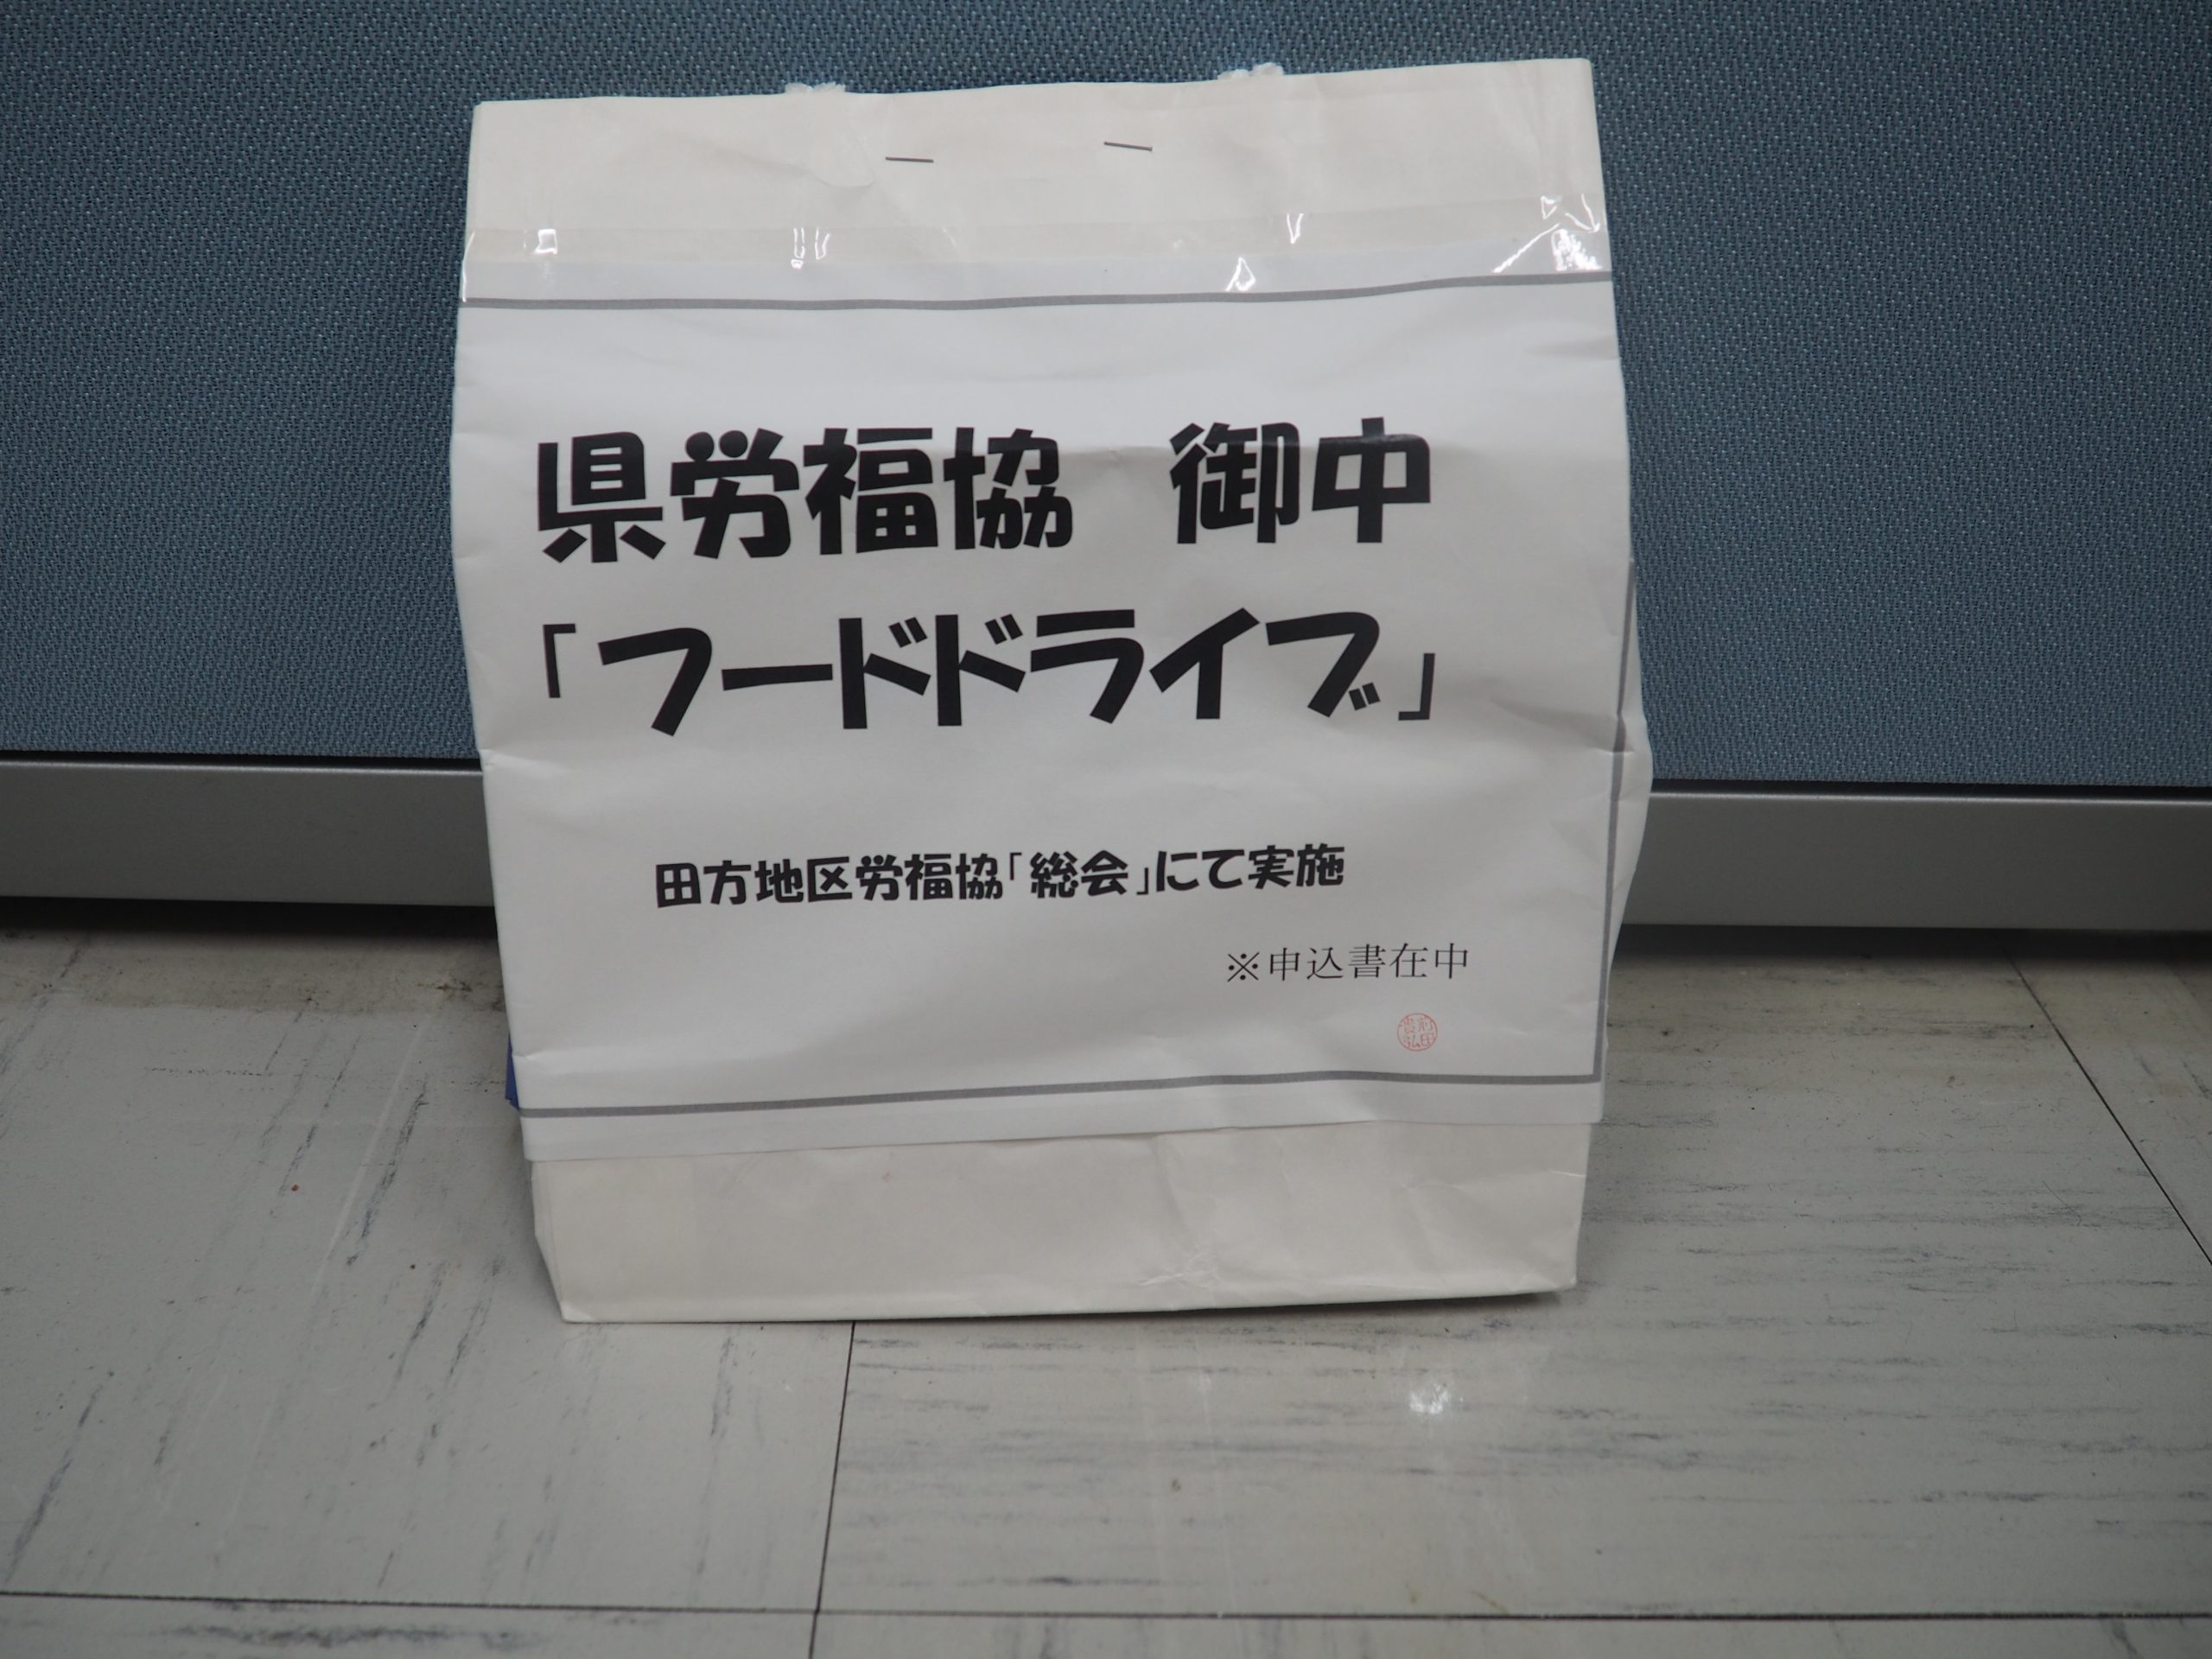 田方地区労働者福祉協議会様から食品を提供いただきました。